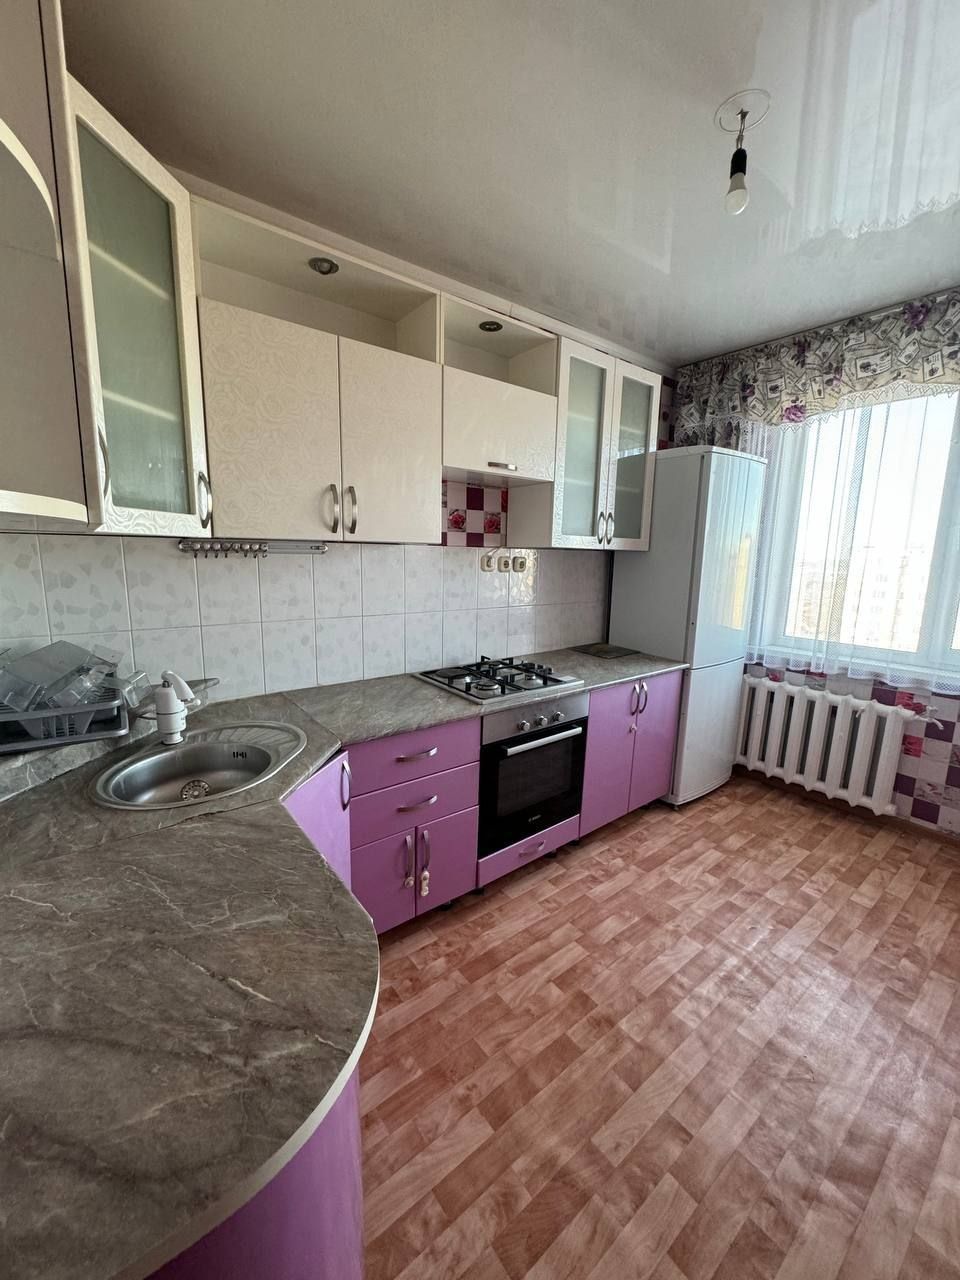 Продам квартиру в отличном районе города Кокшетау